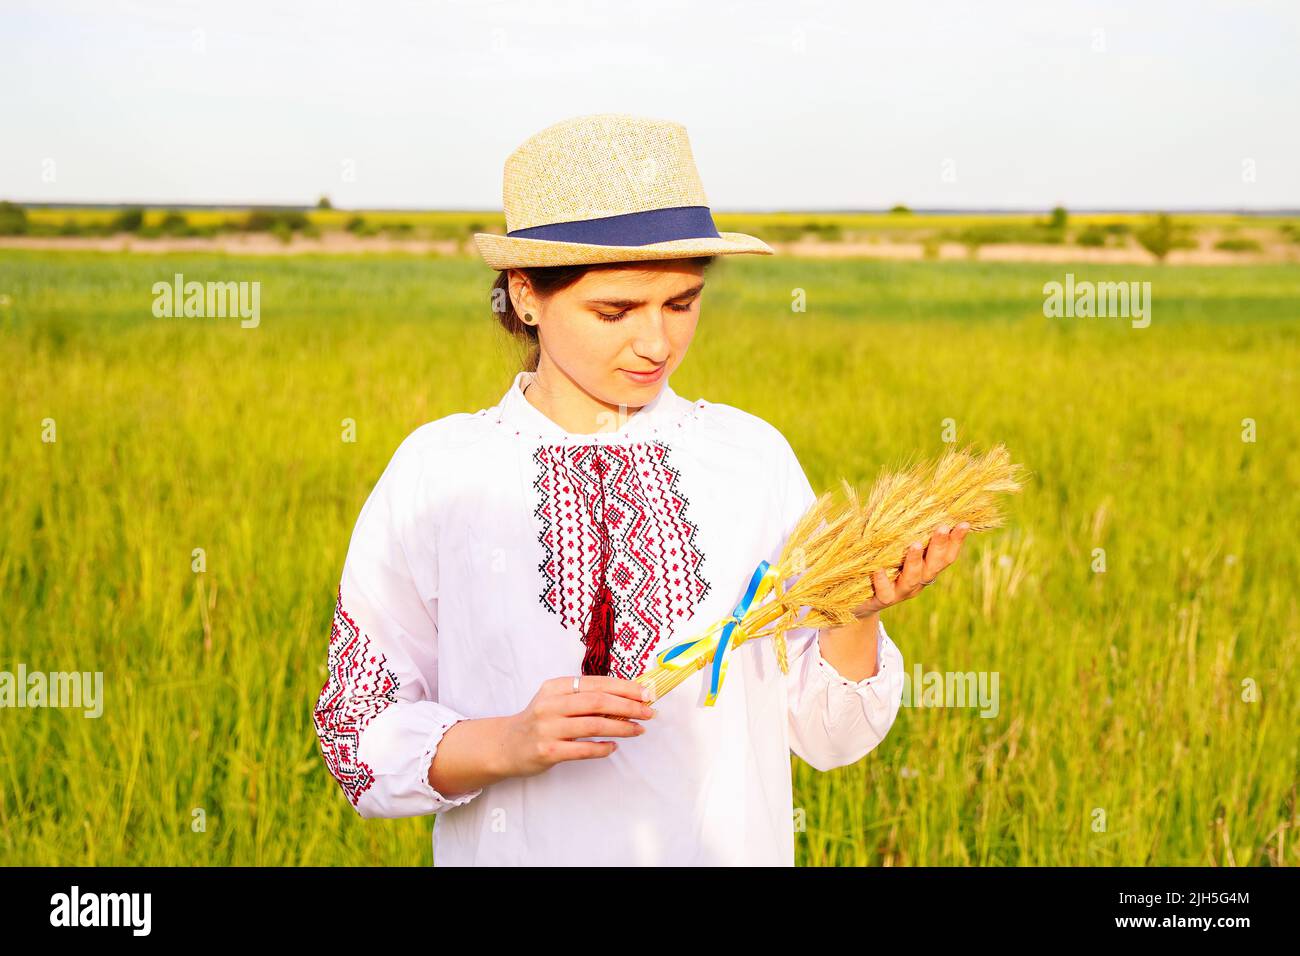 Unschärfe junge Frau in vyshywanka und Hut hält Bouquet von reifen goldenen Ähren gebunden auf der Wiese Natur Hintergrund. Flagge Ukraine Stockfoto